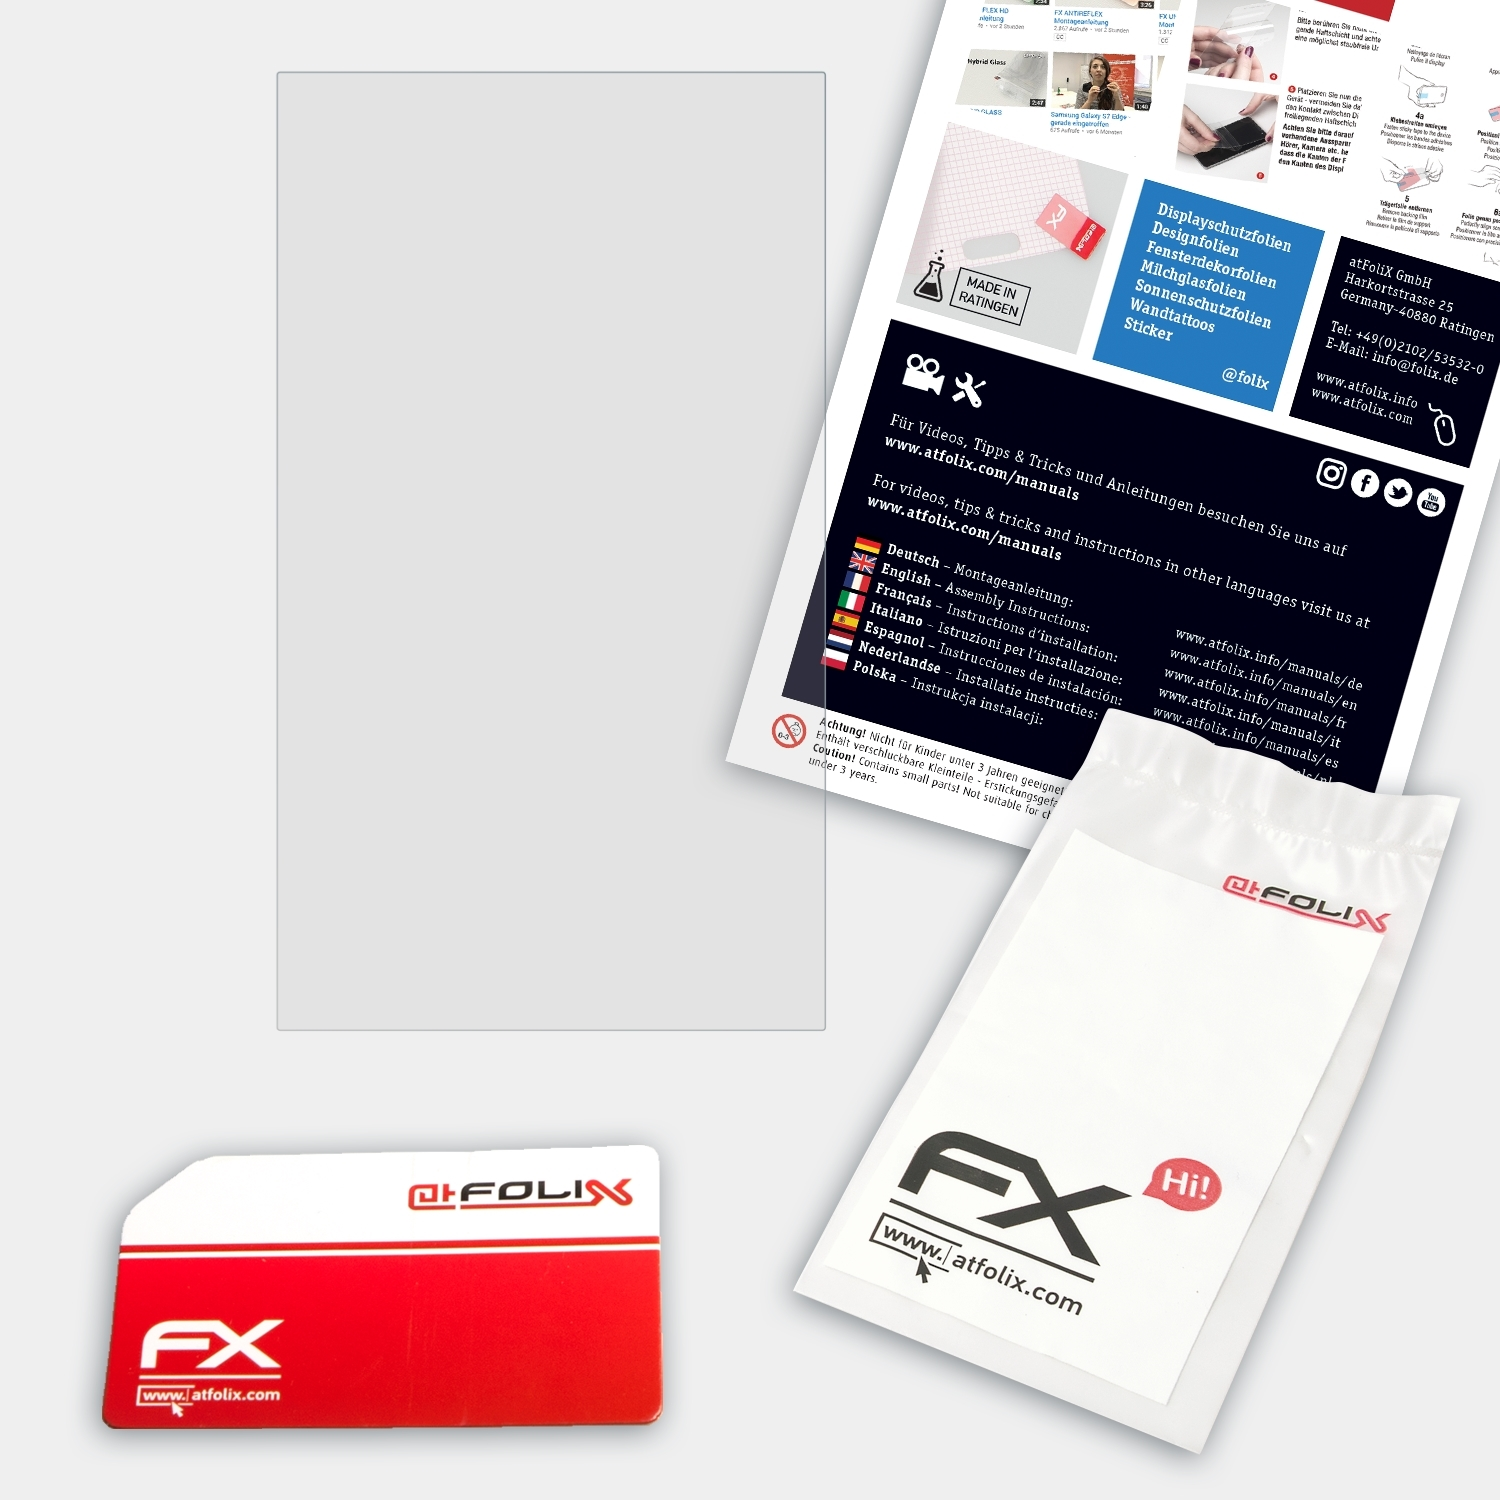 Displayschutz(für FlexScan EV2785-BK) ATFOLIX FX-Antireflex Eizo